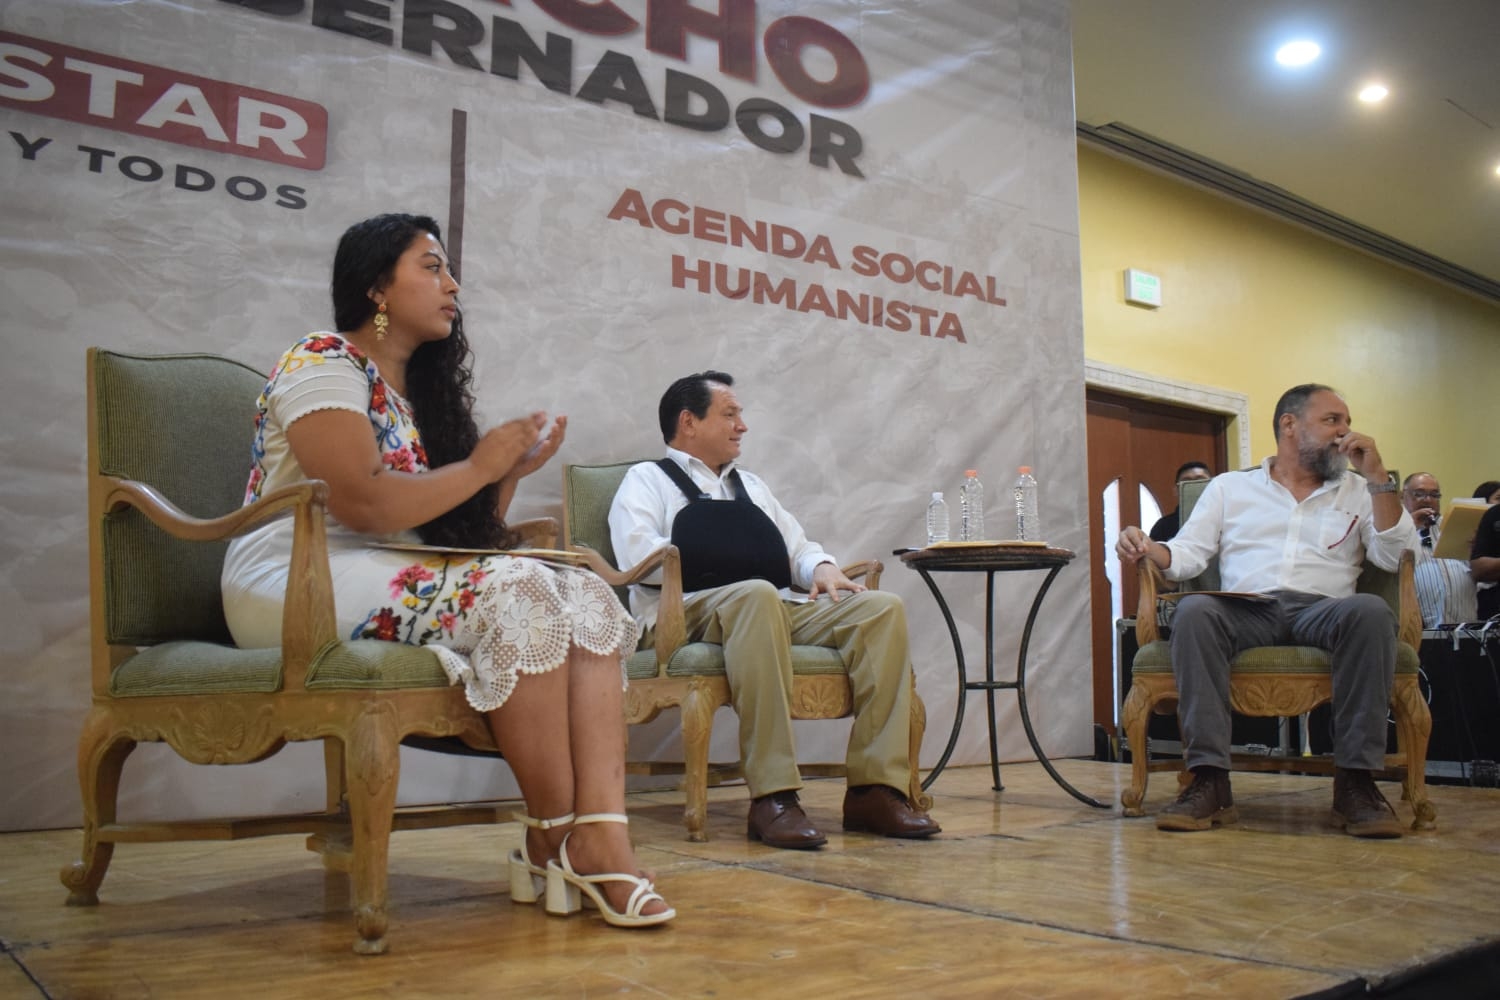 Joaquín Díaz Mena presenta su agenda social humanista en Mérida: EN VIVO